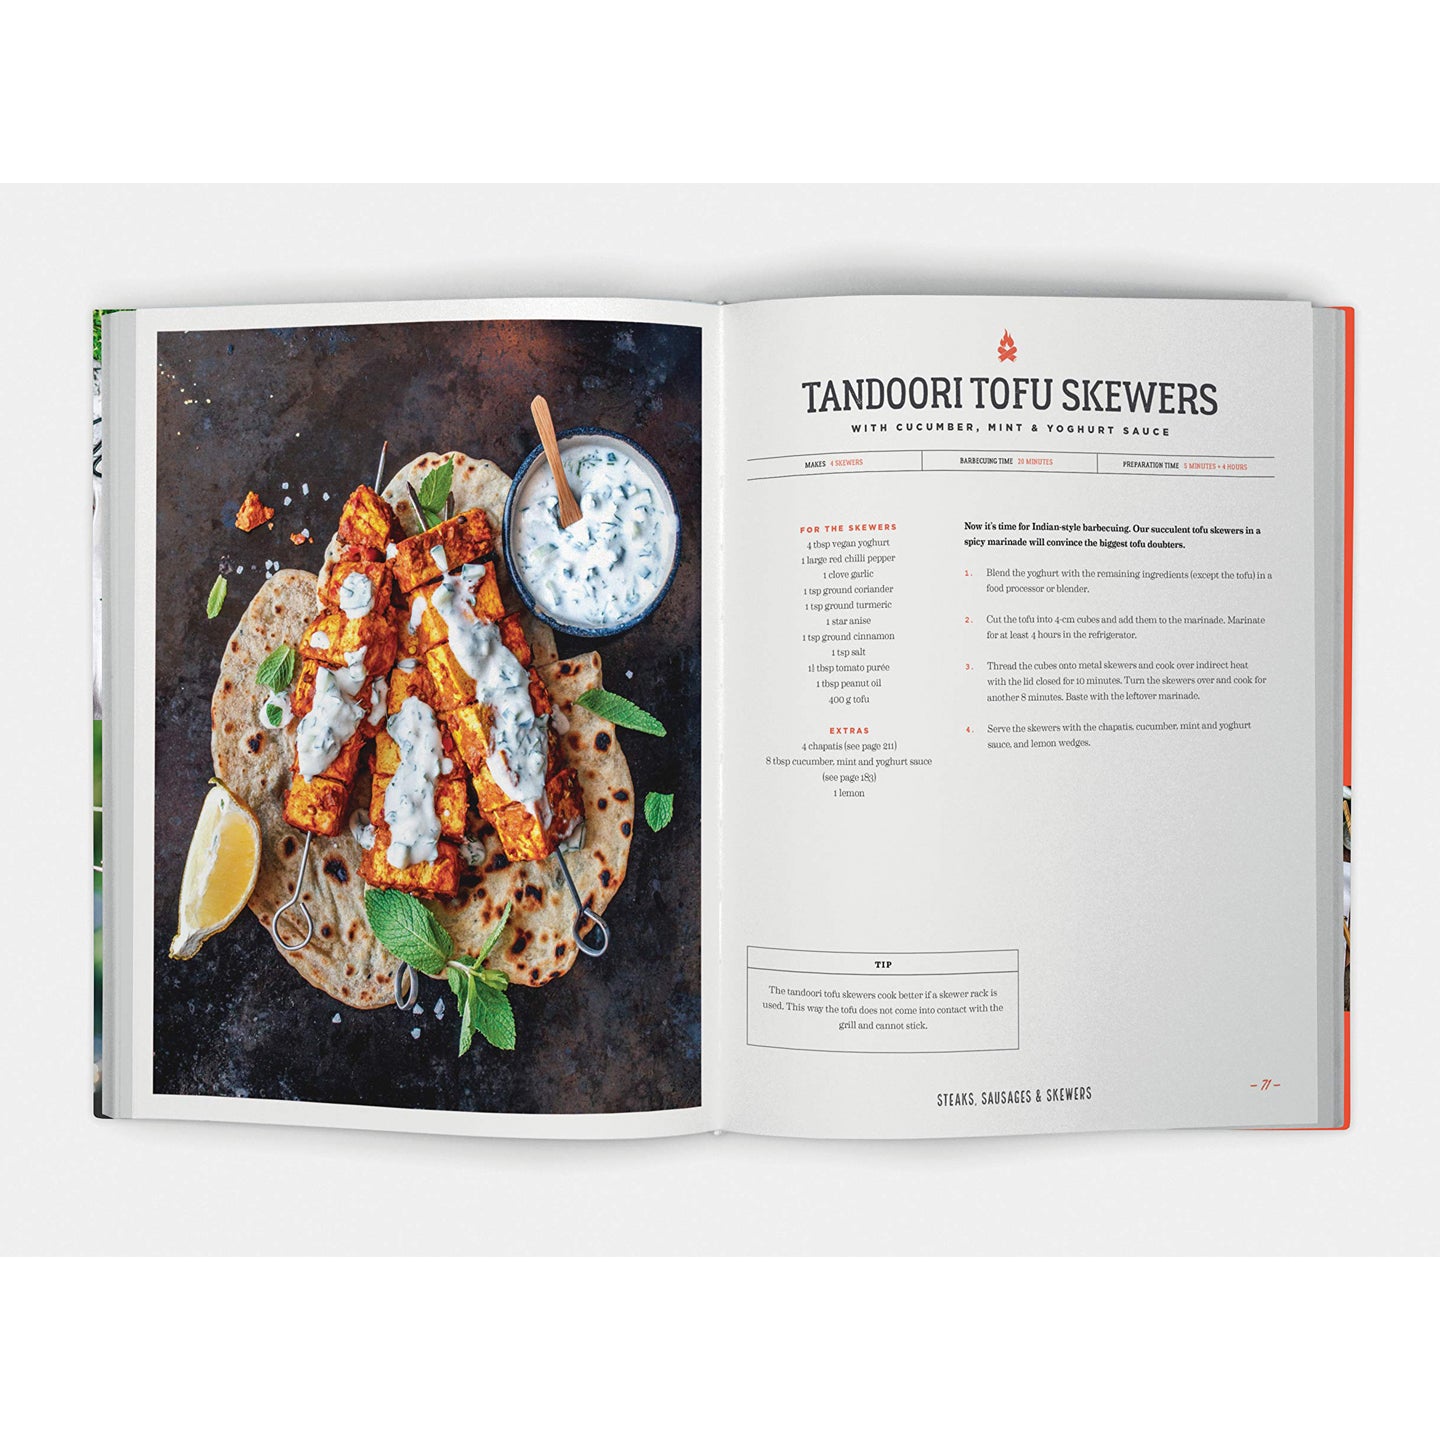 Vegan BBQ Cookbook